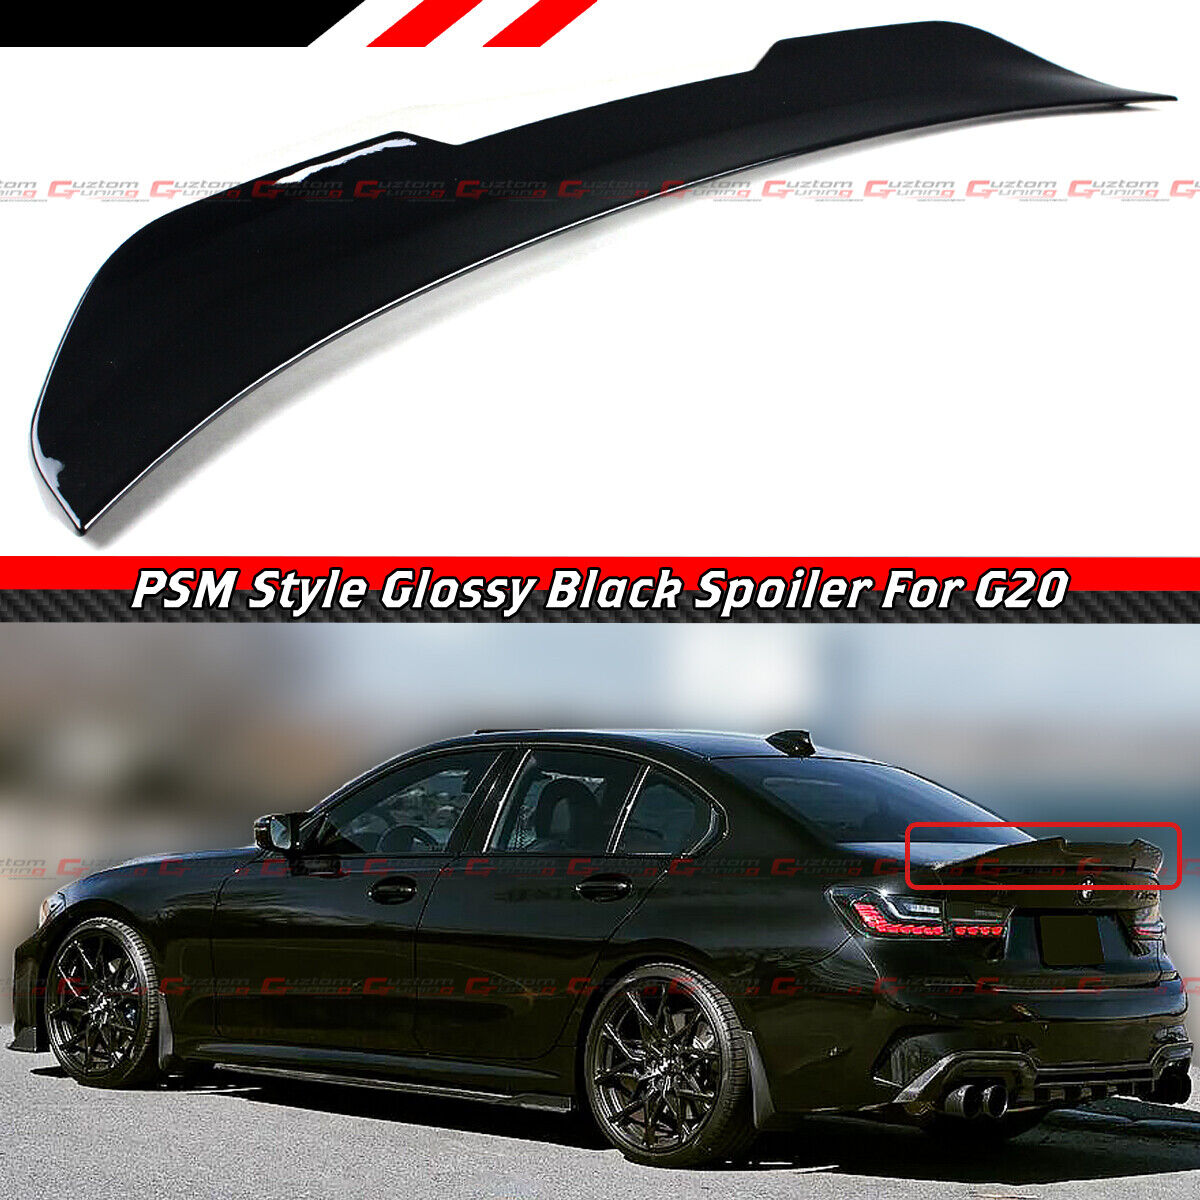 FOR 19-24 BMW G20 330i M340i M3 G80 GLOSS BLACK PSM STYLE HIGHKICK TRUNK SPOILER